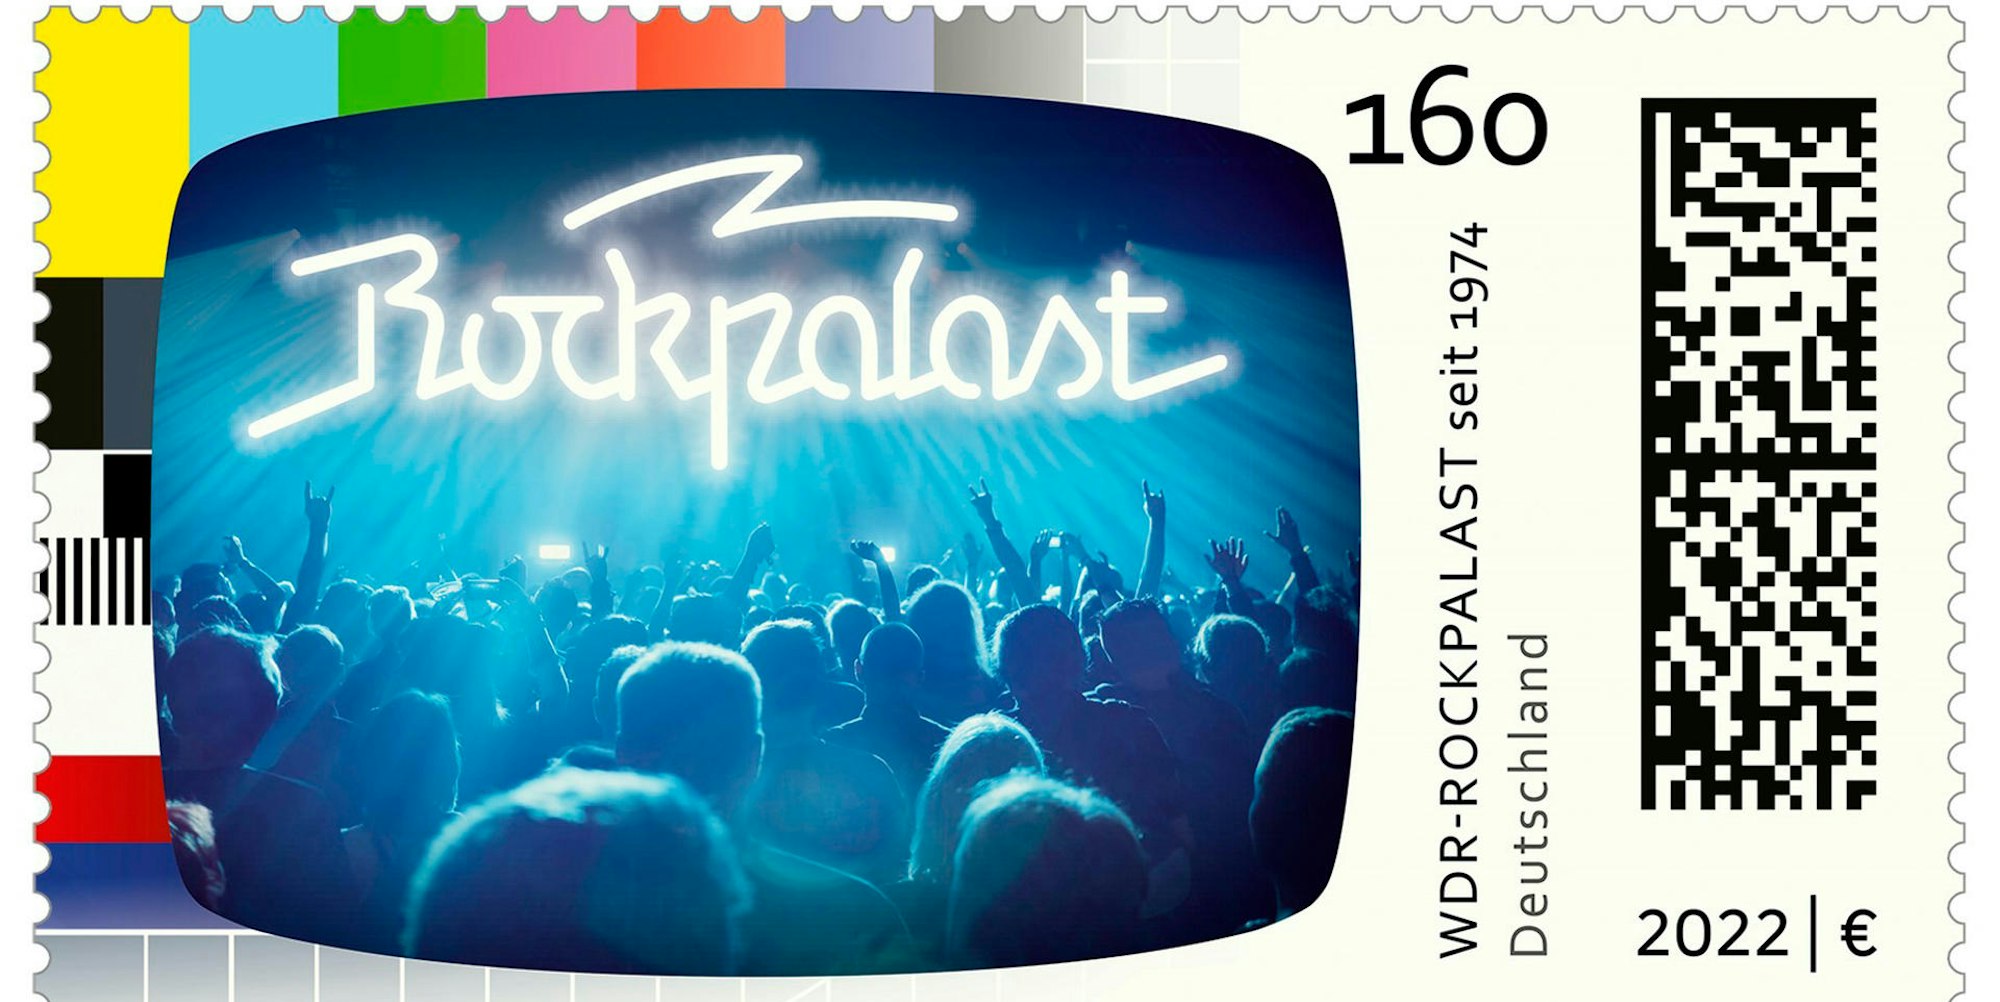 WDR Rockpalast Briefmarke 201022